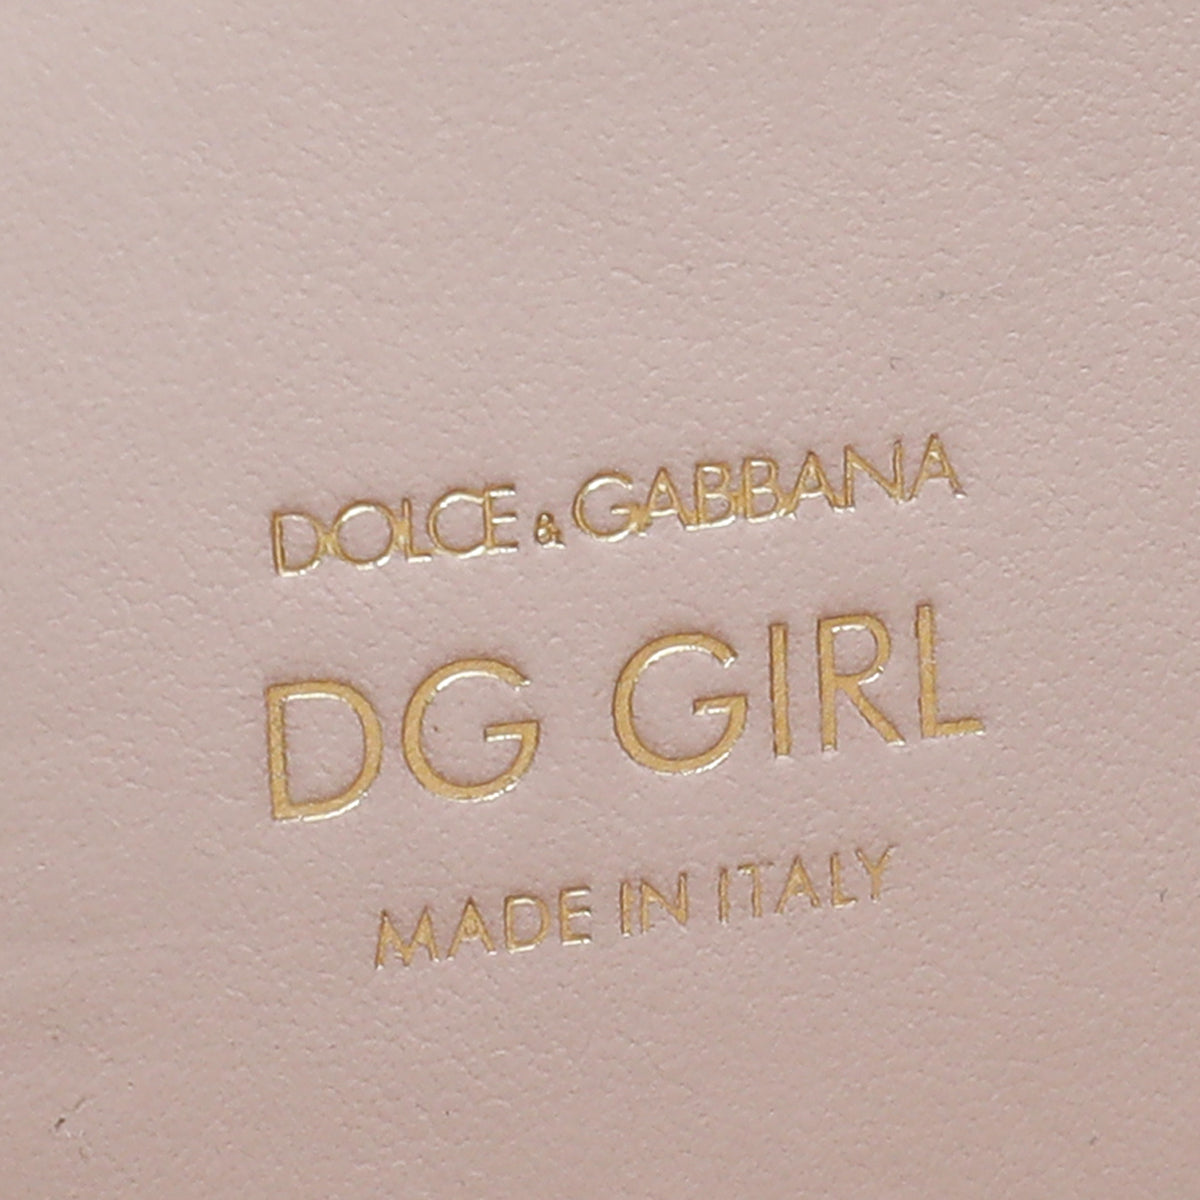 Dolce & Gabbana Light Pink D&G Girls Phone Bag